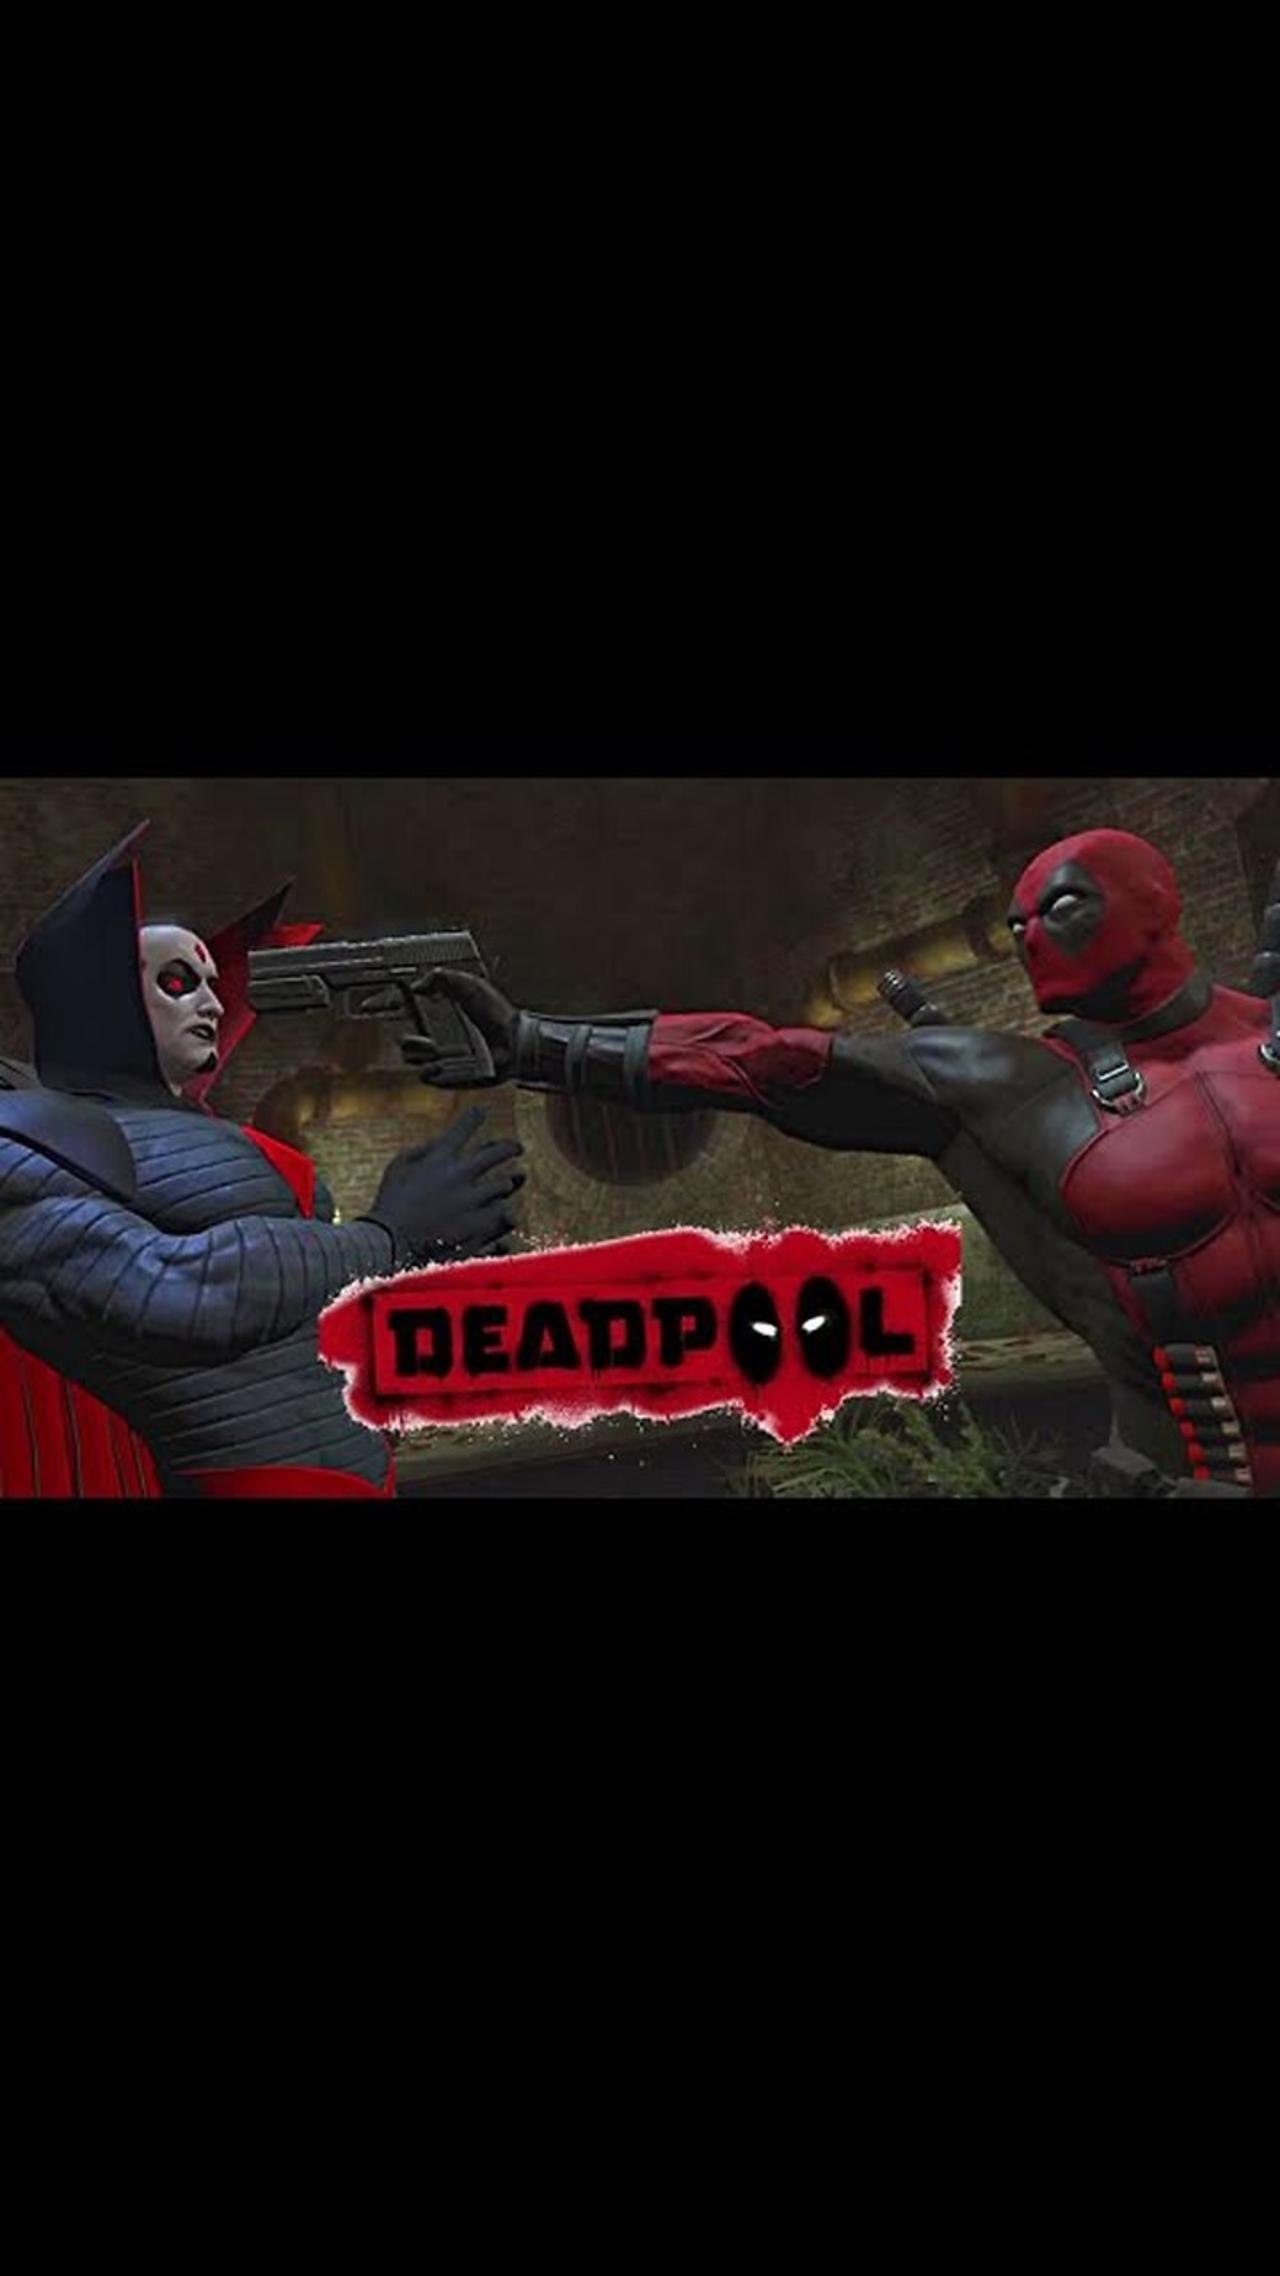 Deadpool VS Mr Sinister Doesn't Go Well